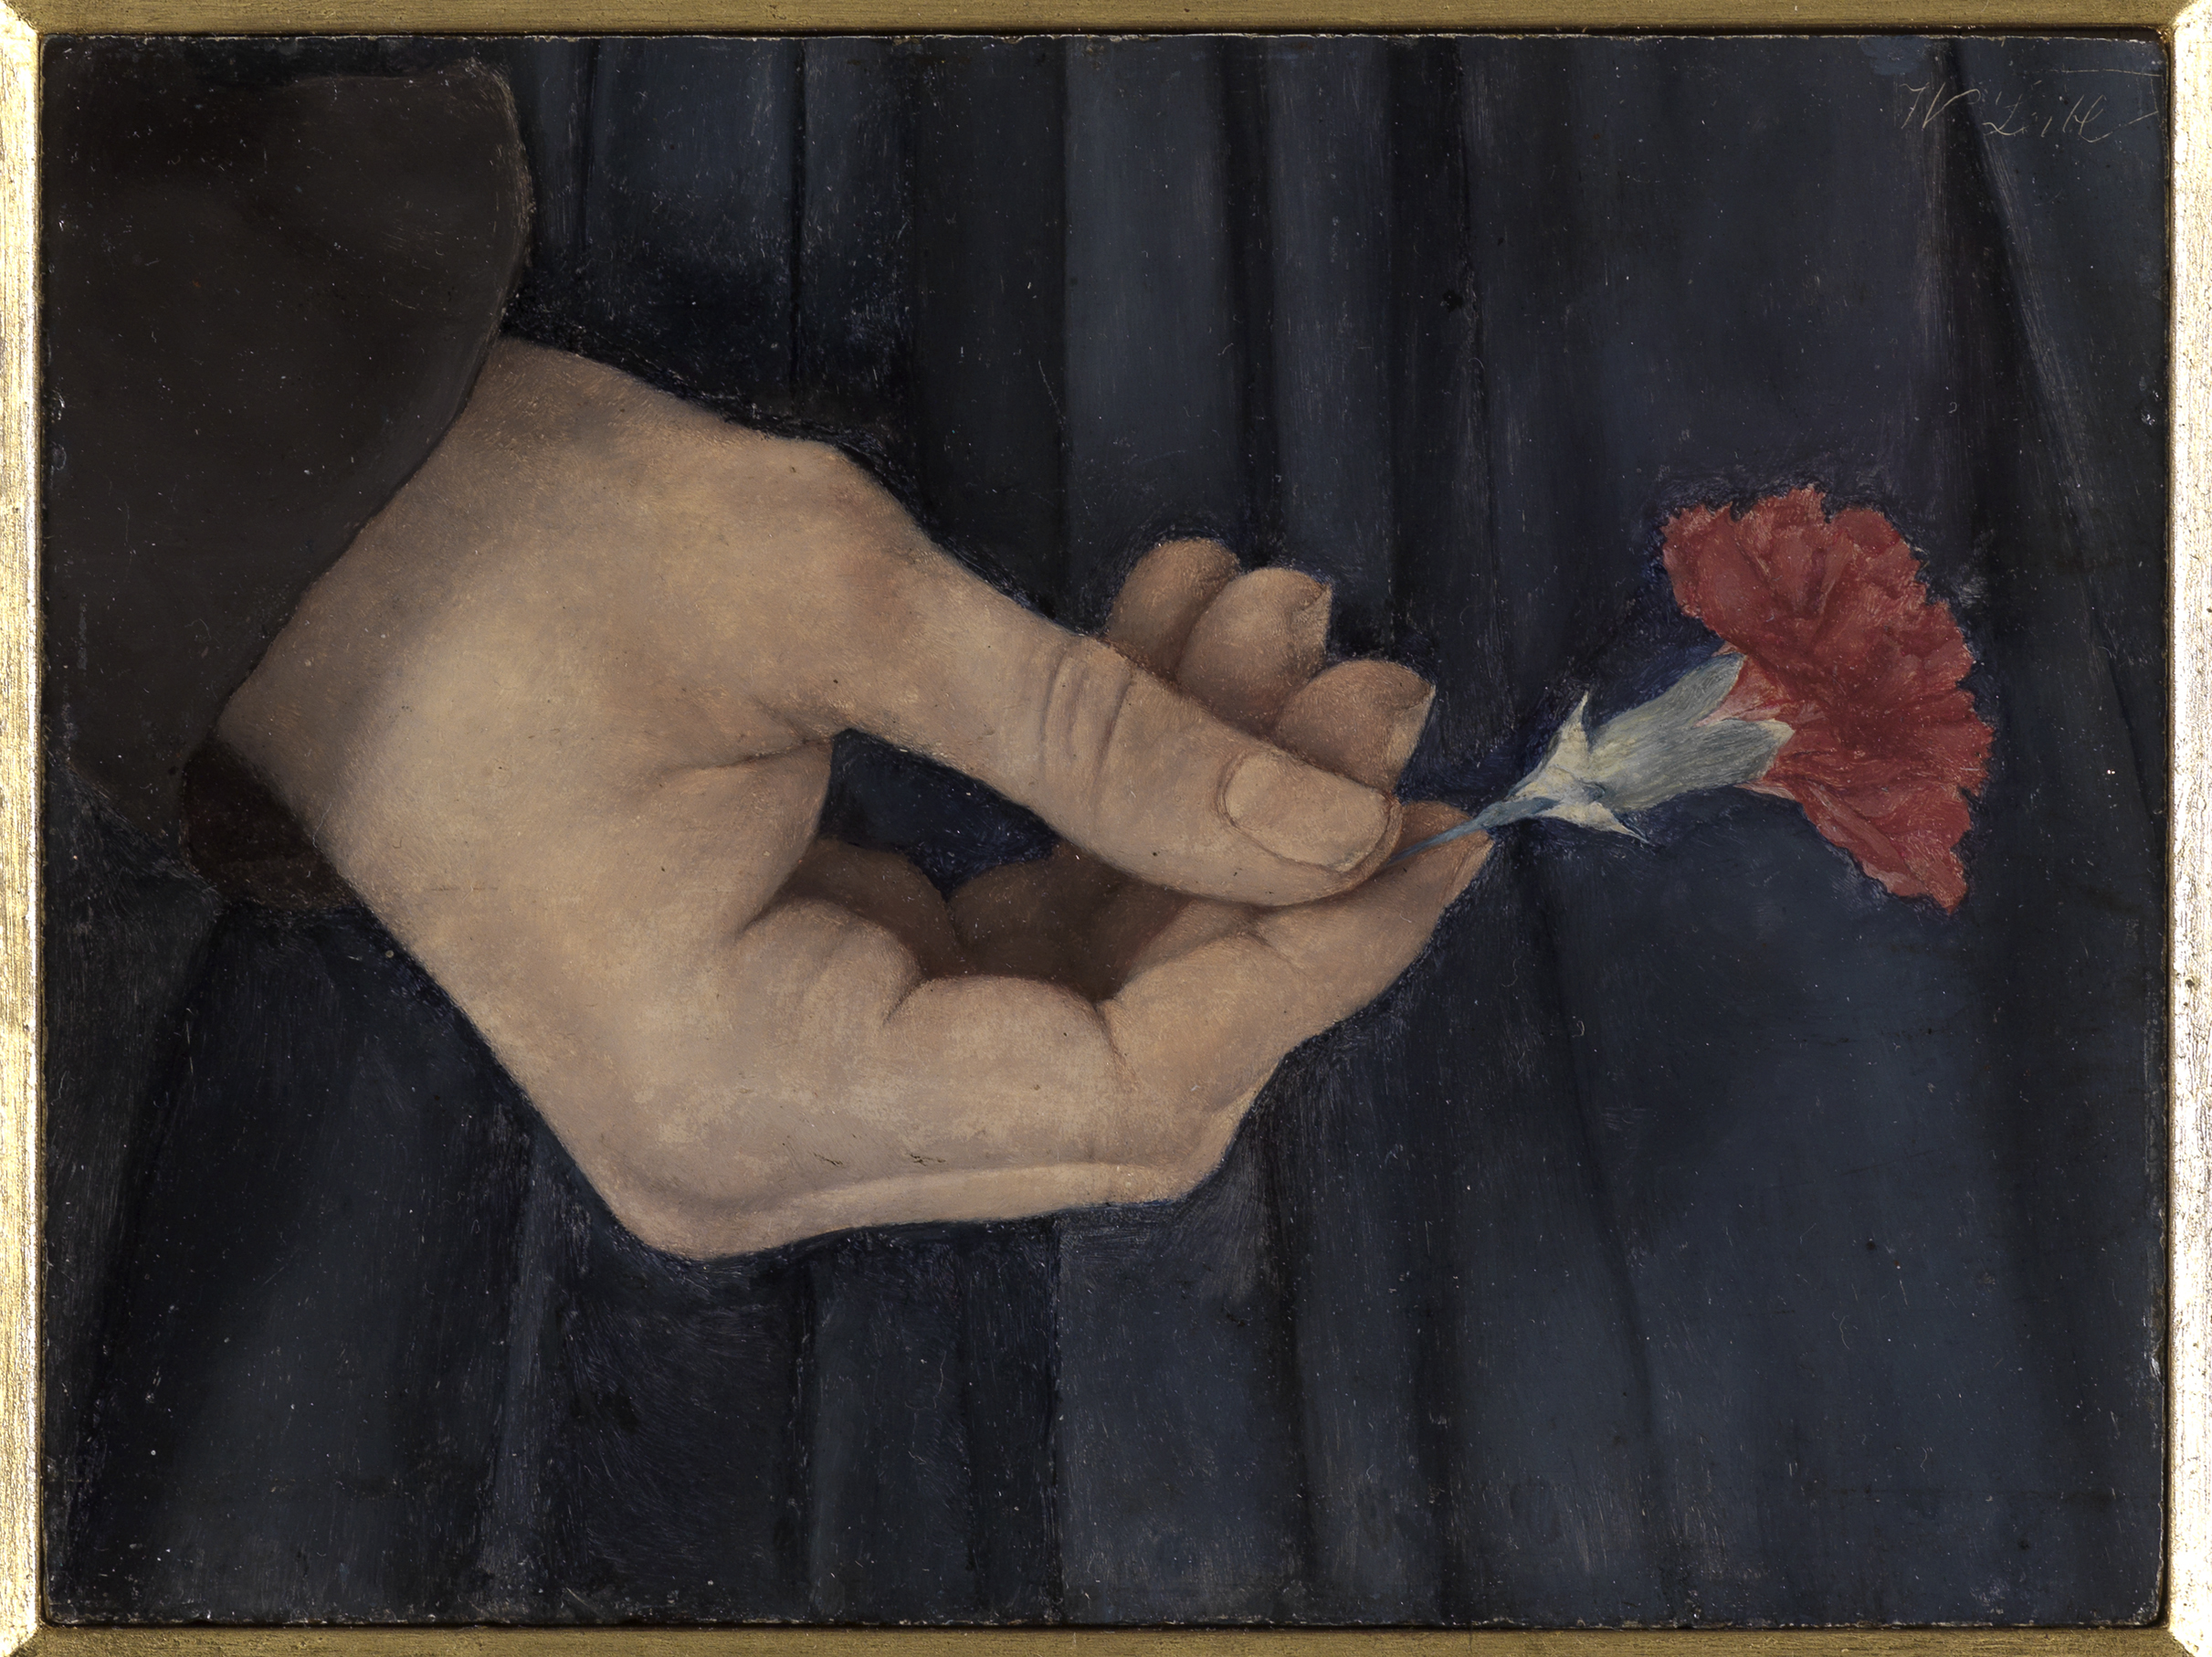 拿着康乃馨的女孩右手 by 威廉 莱布尔 - 1880 - 13 x 17.5 cm 